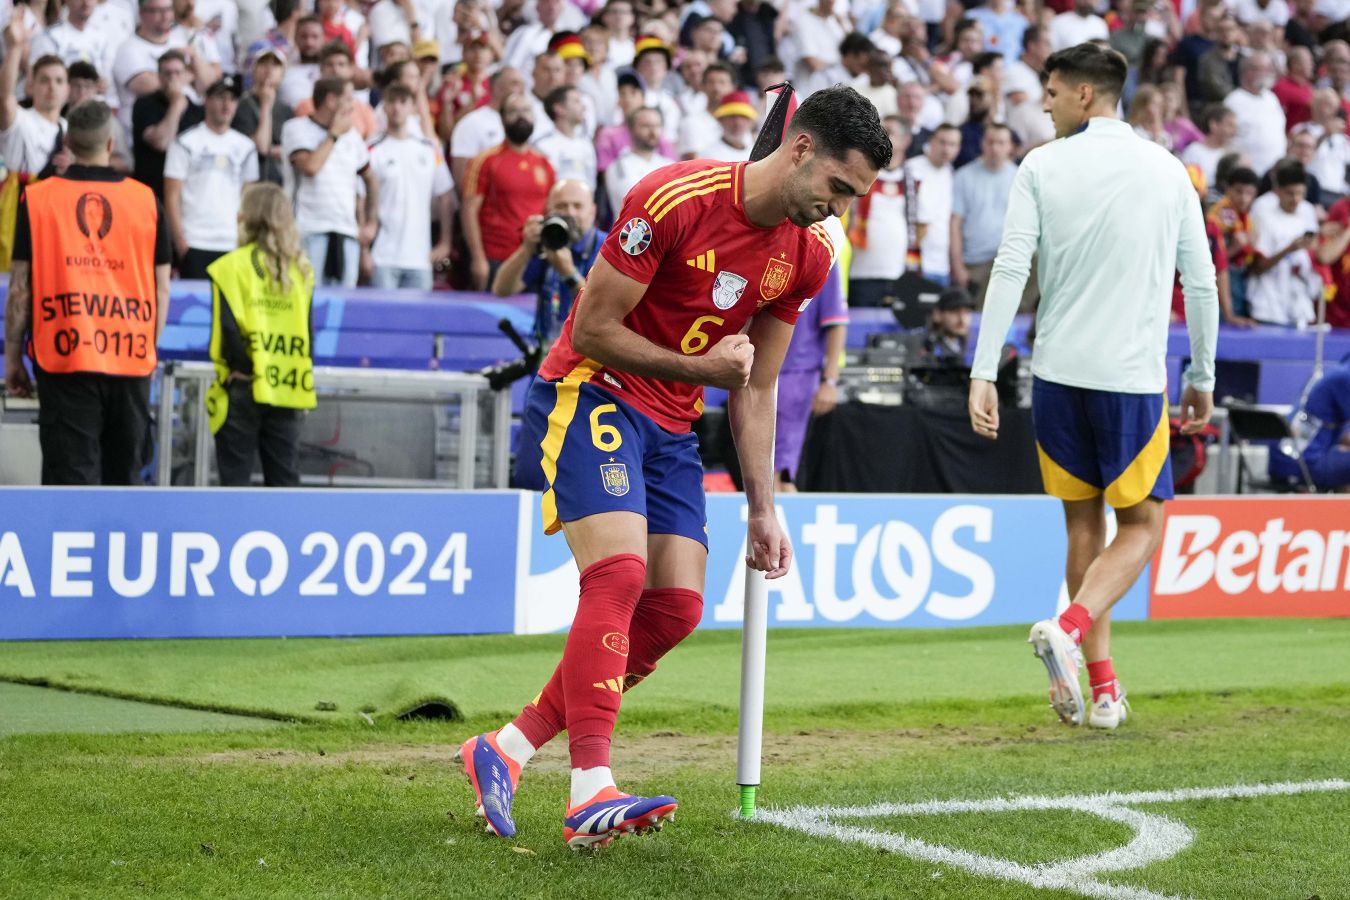 Мерино, забив в матче Испания — Германия, повторил празднование своего отца